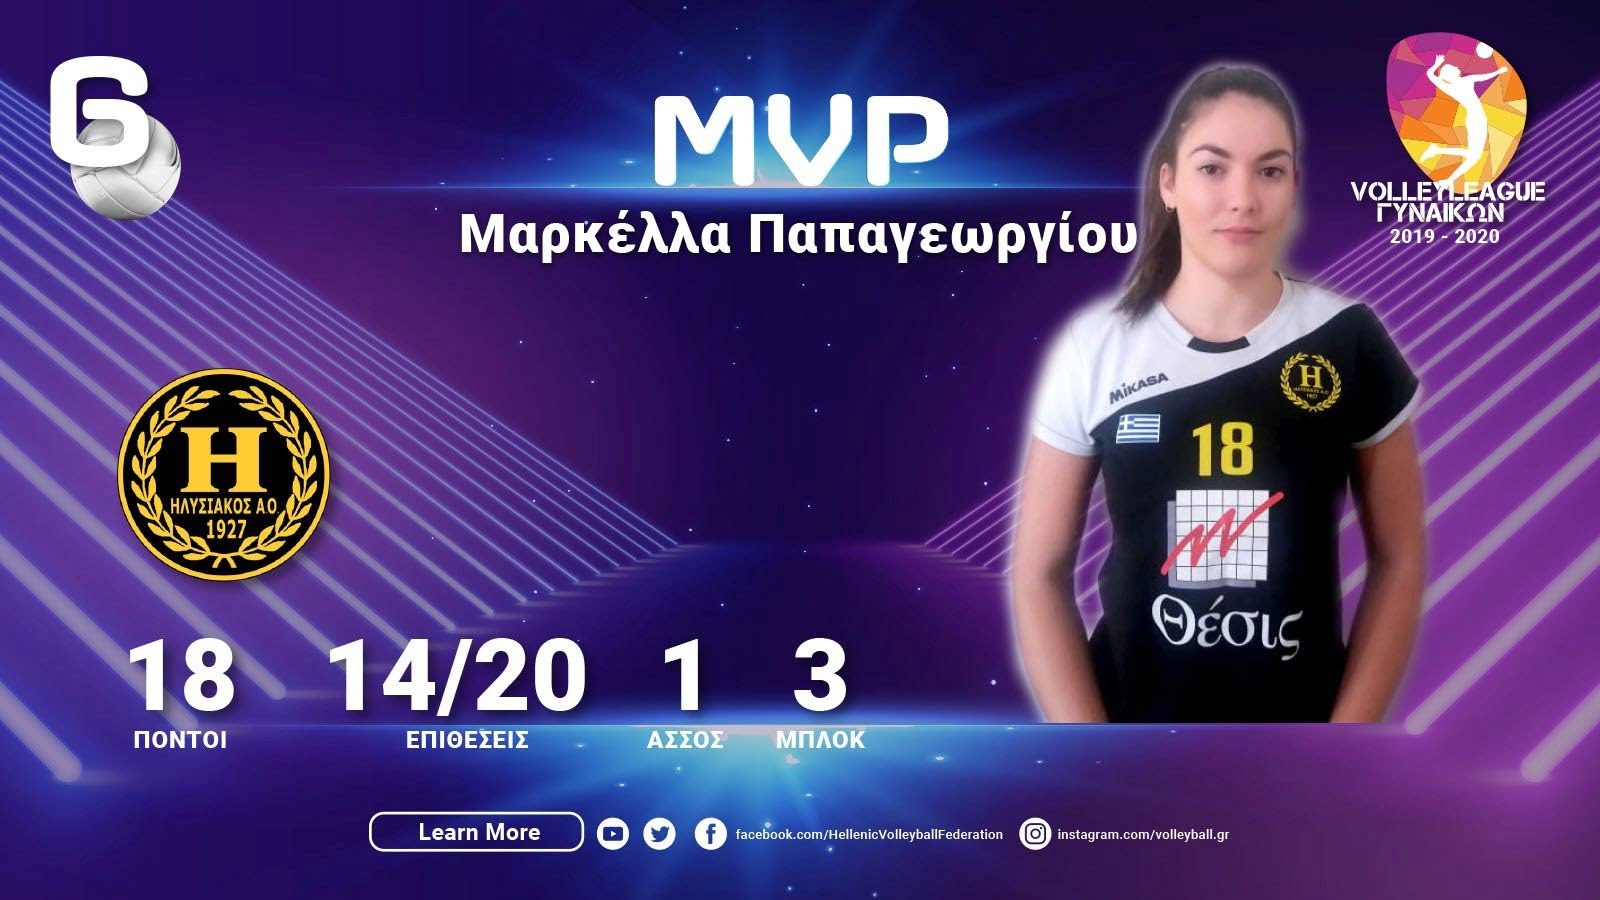 Η Σαμιώτισσα Μαρκέλλα Παπαγεωργίου MVP της 6ης αγωνιστικής της Volleyleague Γυναικών